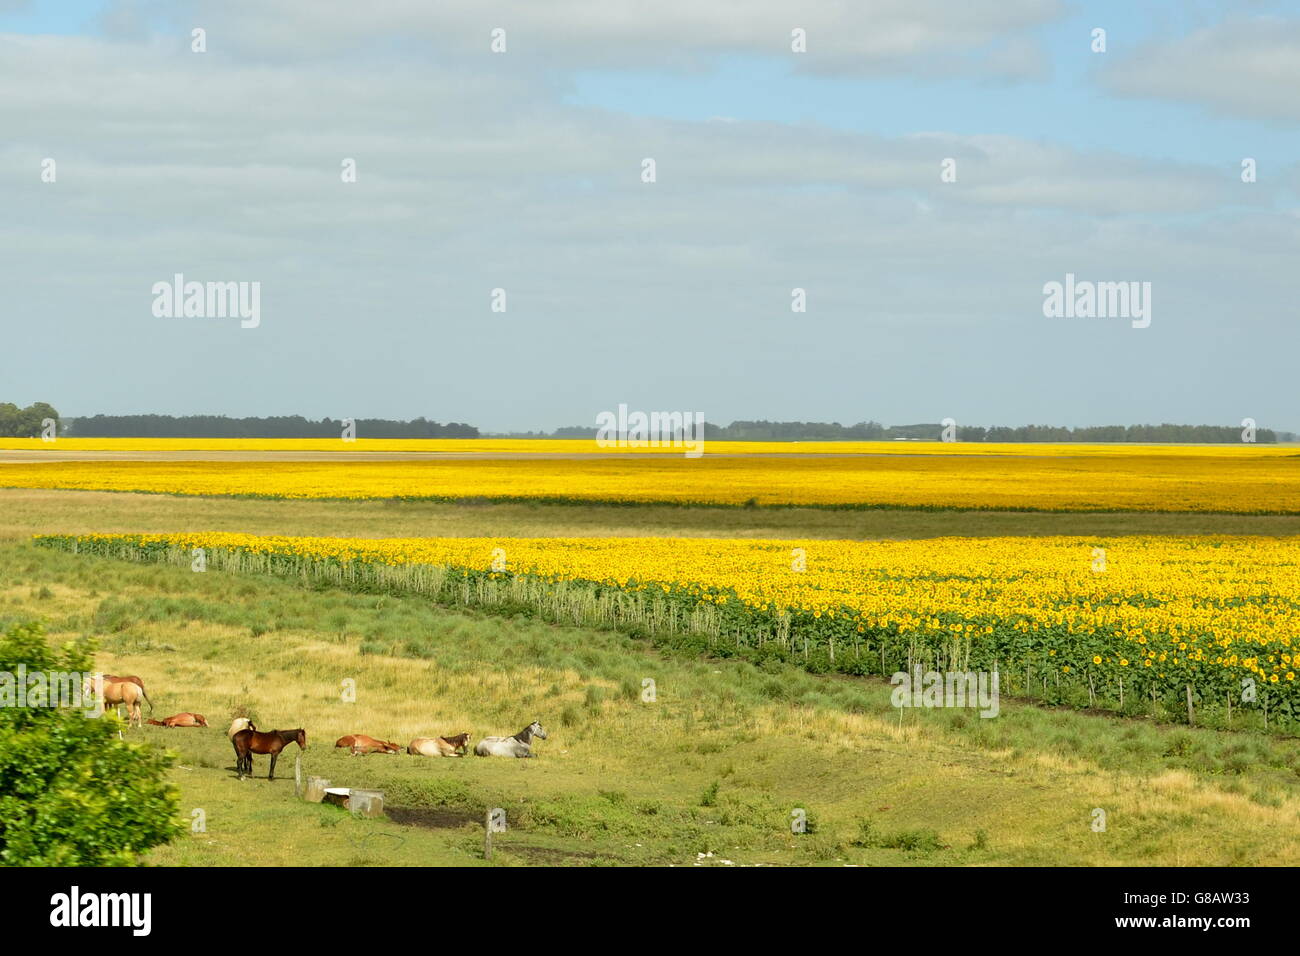 Pferde stehen neben einem Sonnenblumenfeld Stockfoto